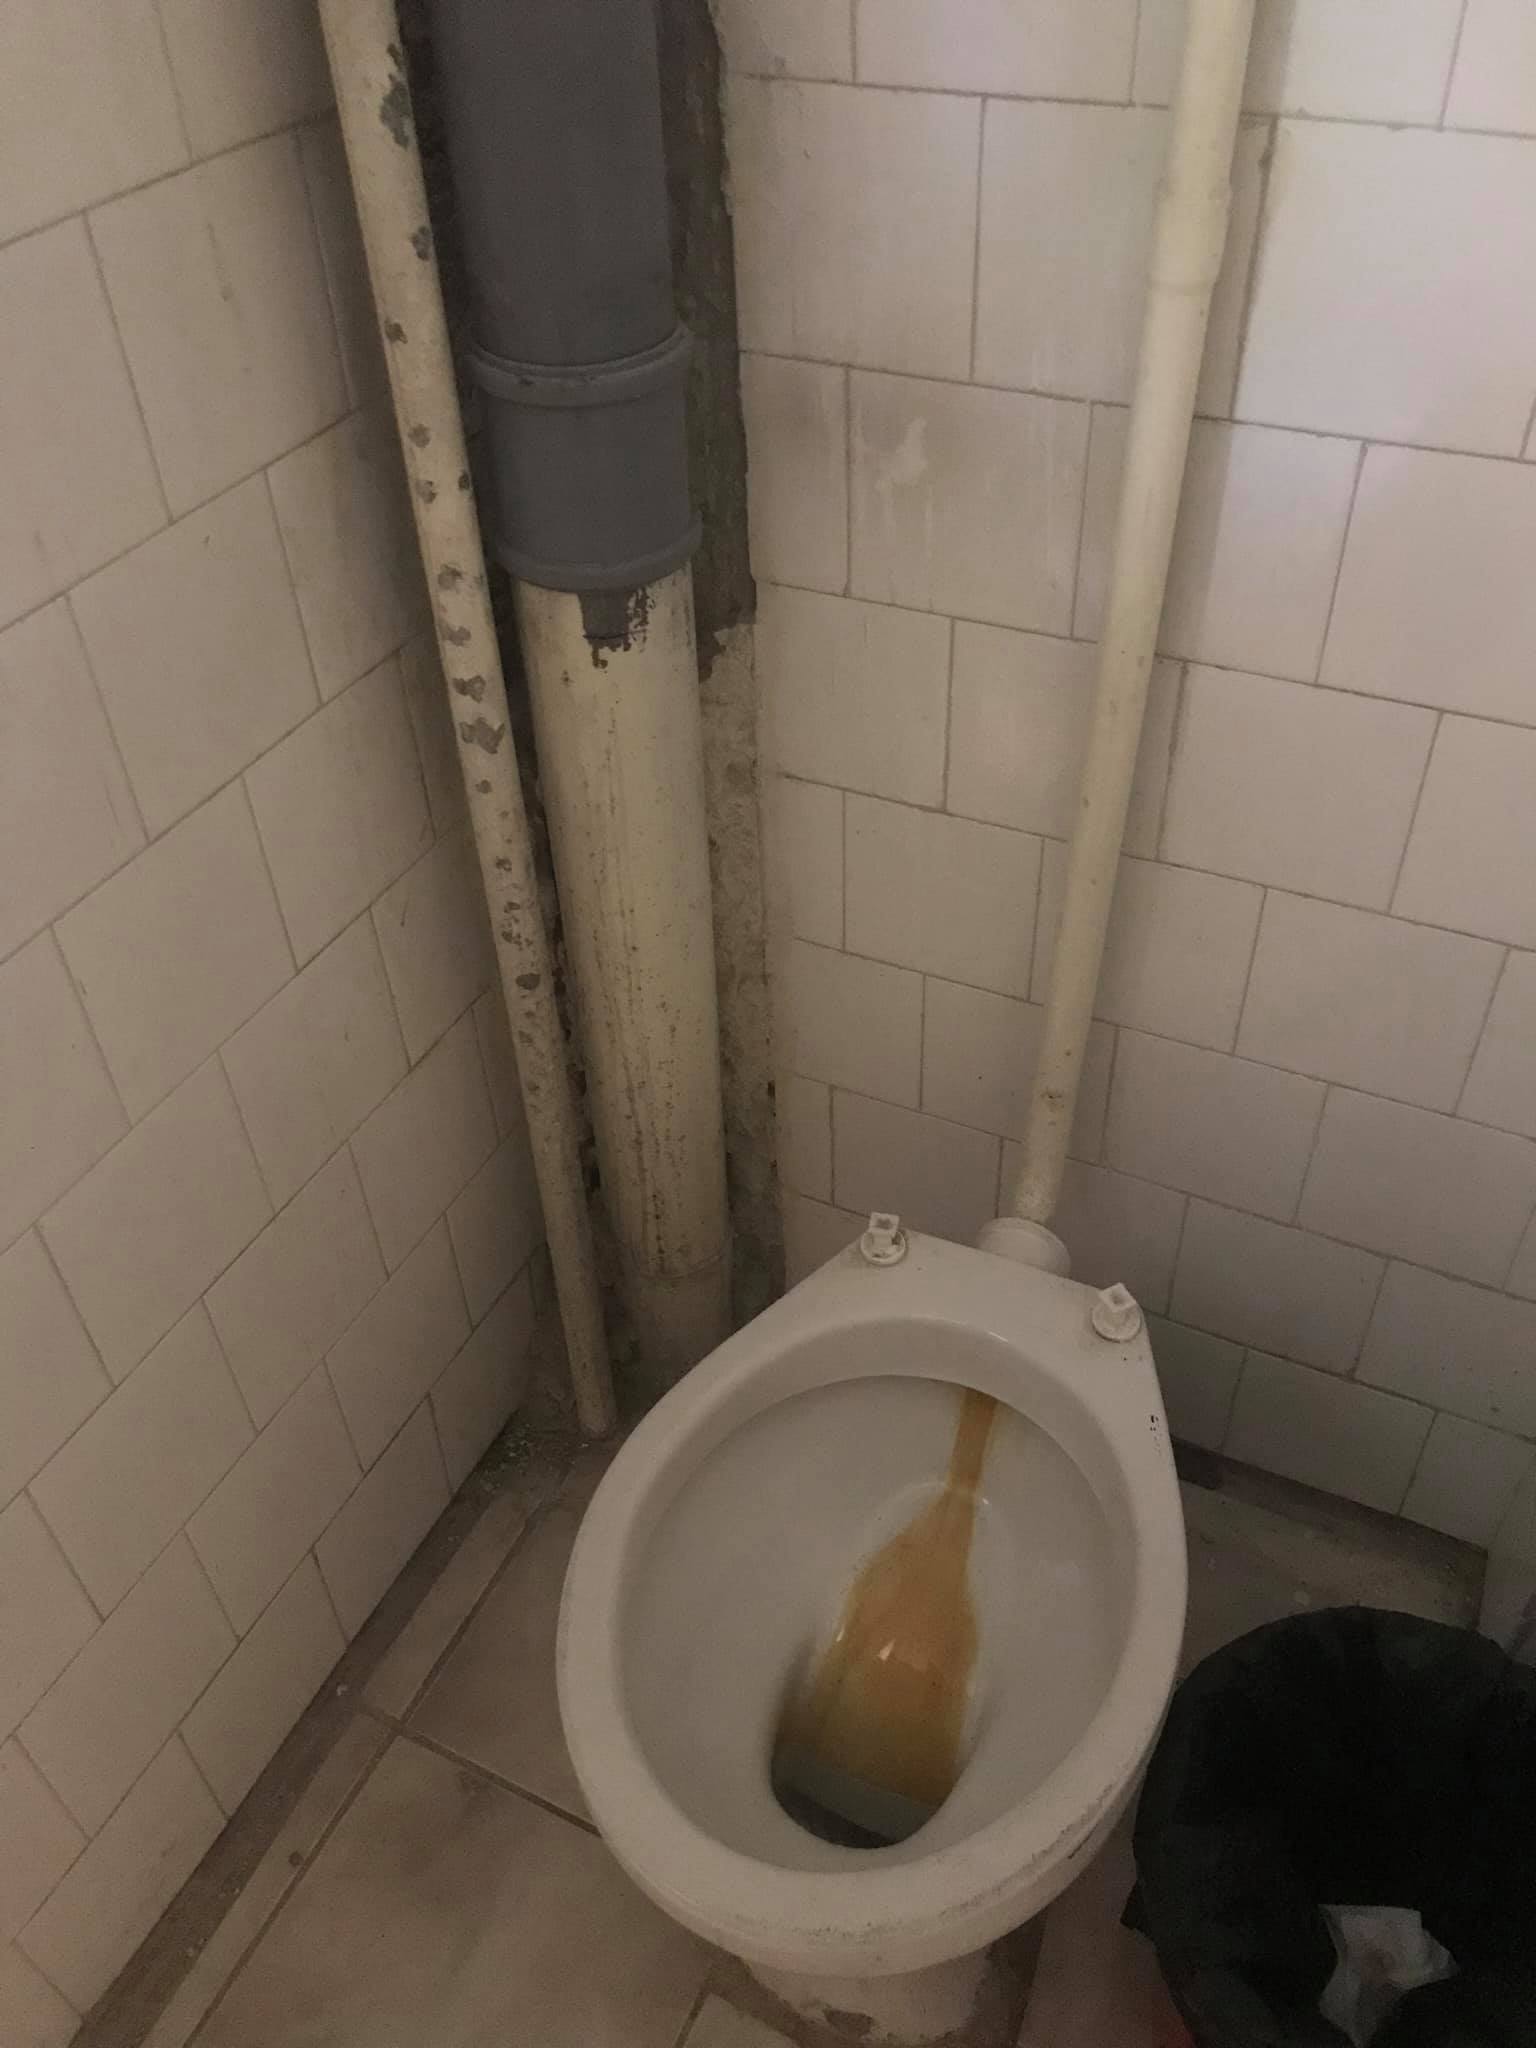 conditii mizere la liceul de arte plastice din timisoara toaleta insalubra 2